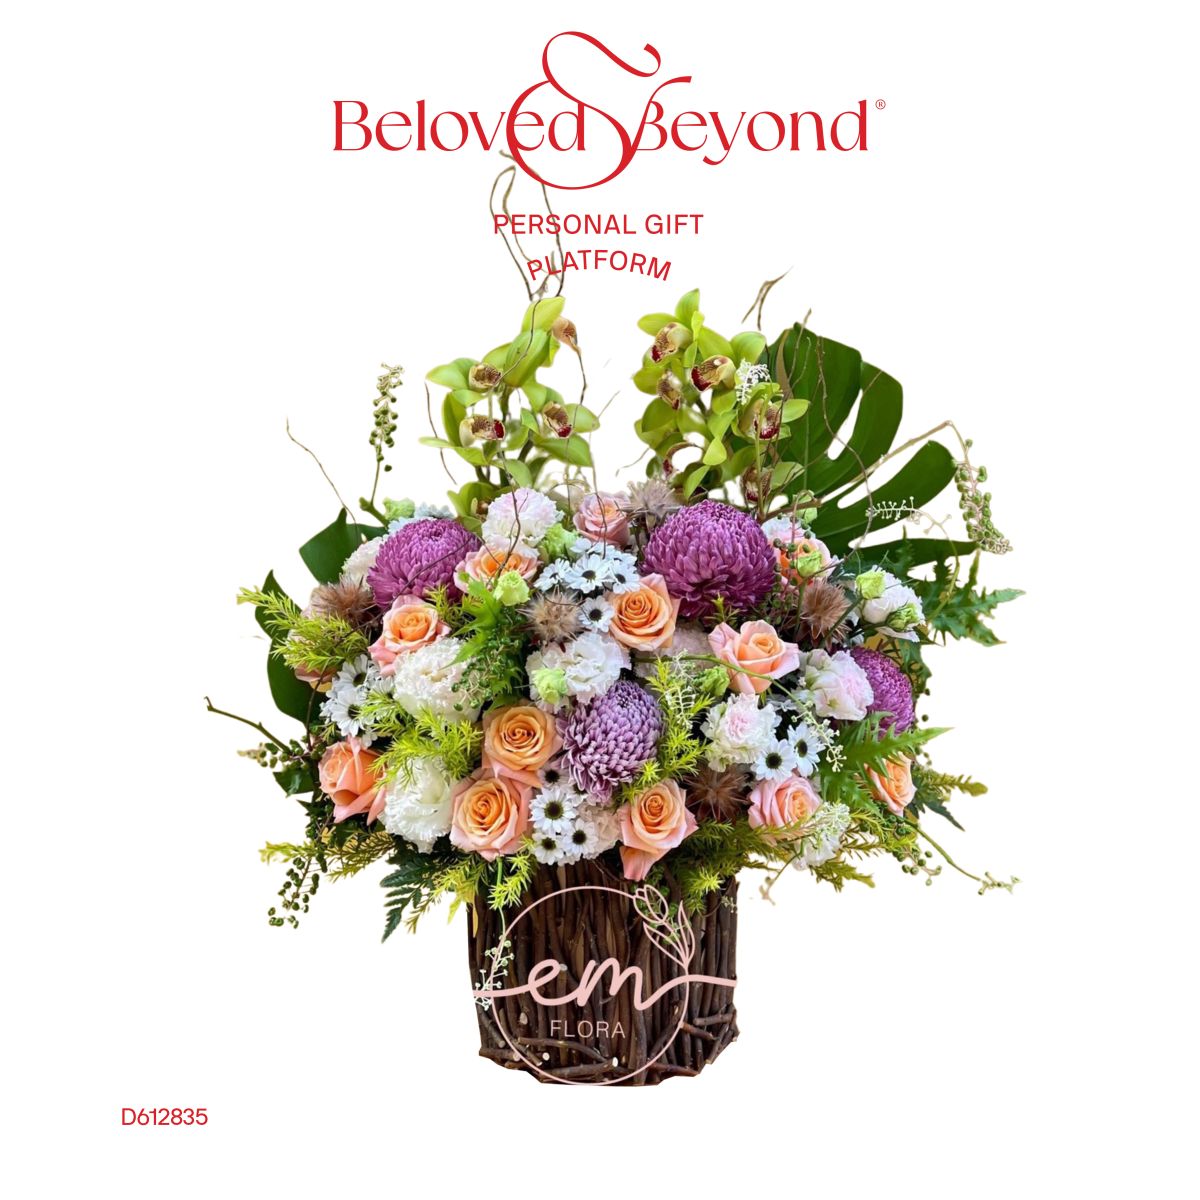 Hoa cúc mẫu đơn đẹp tại Beloved & Beyond